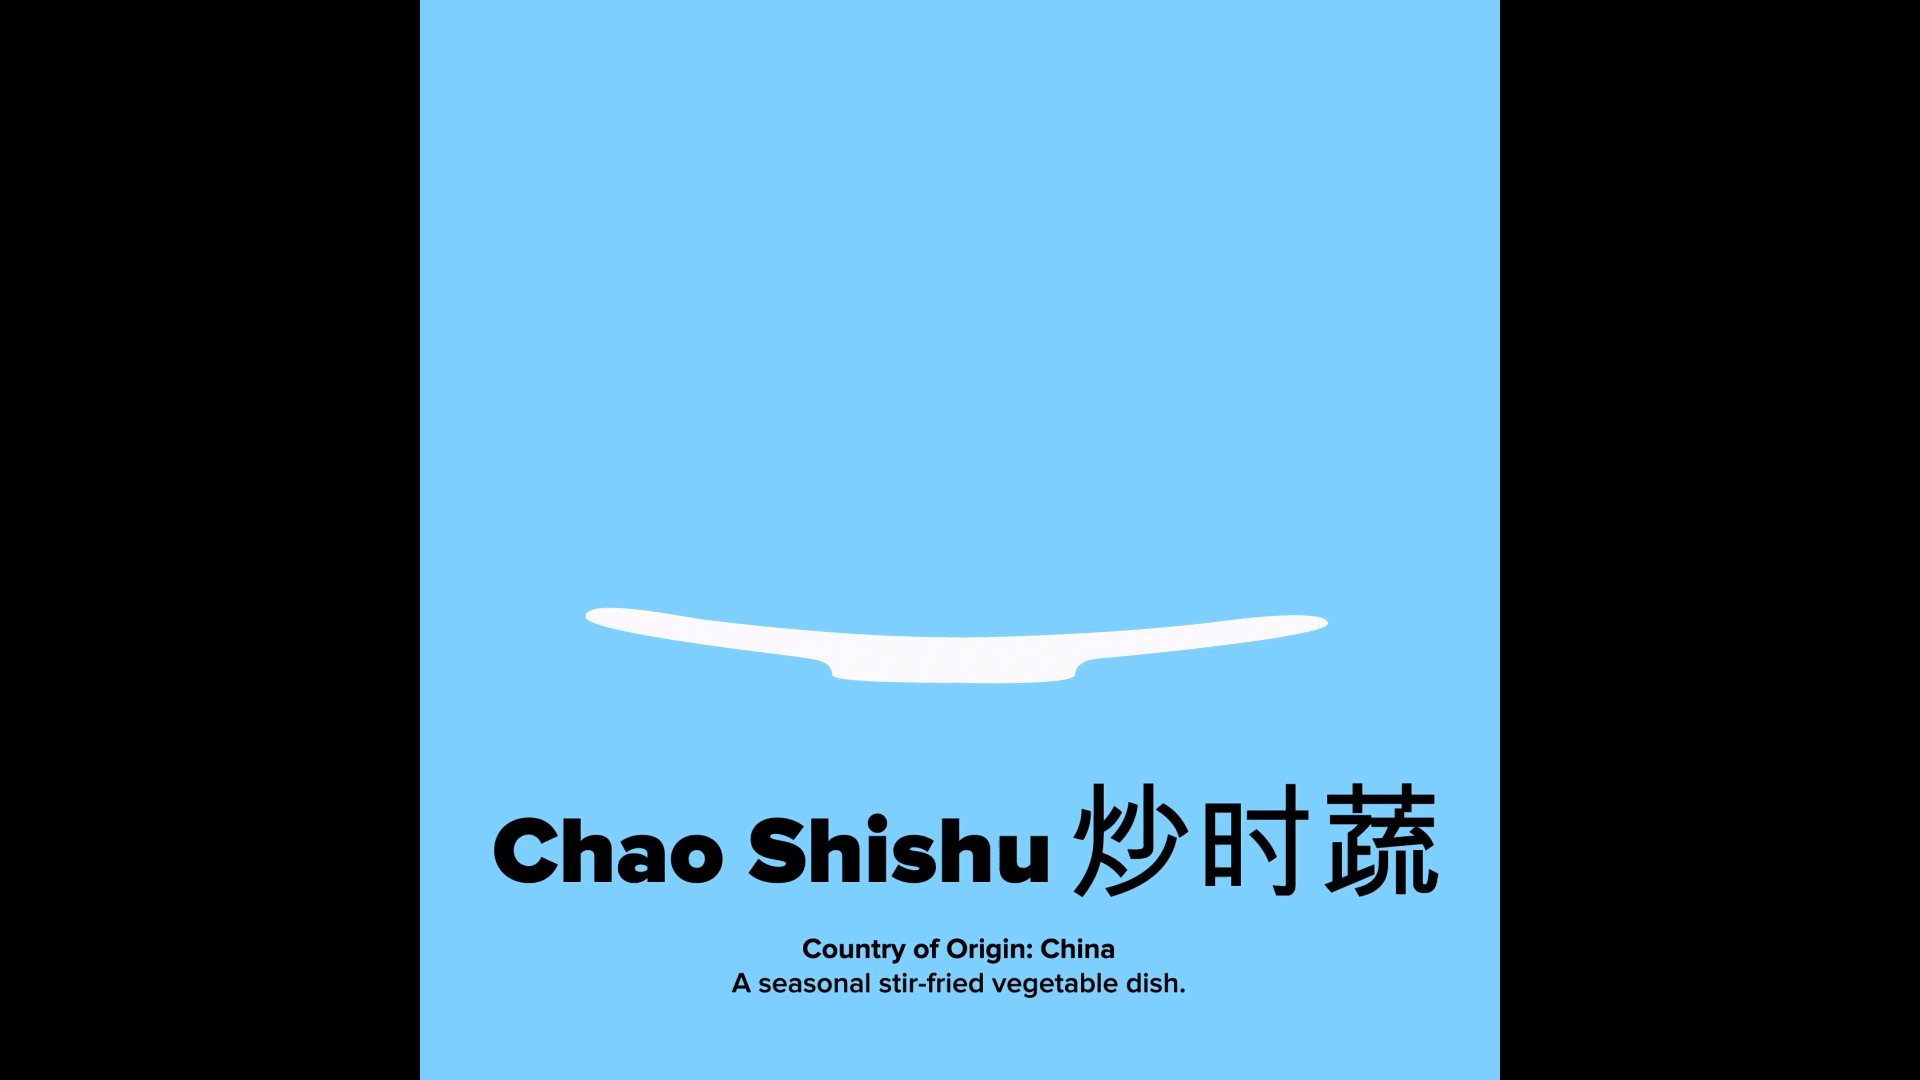 Chao Shishu